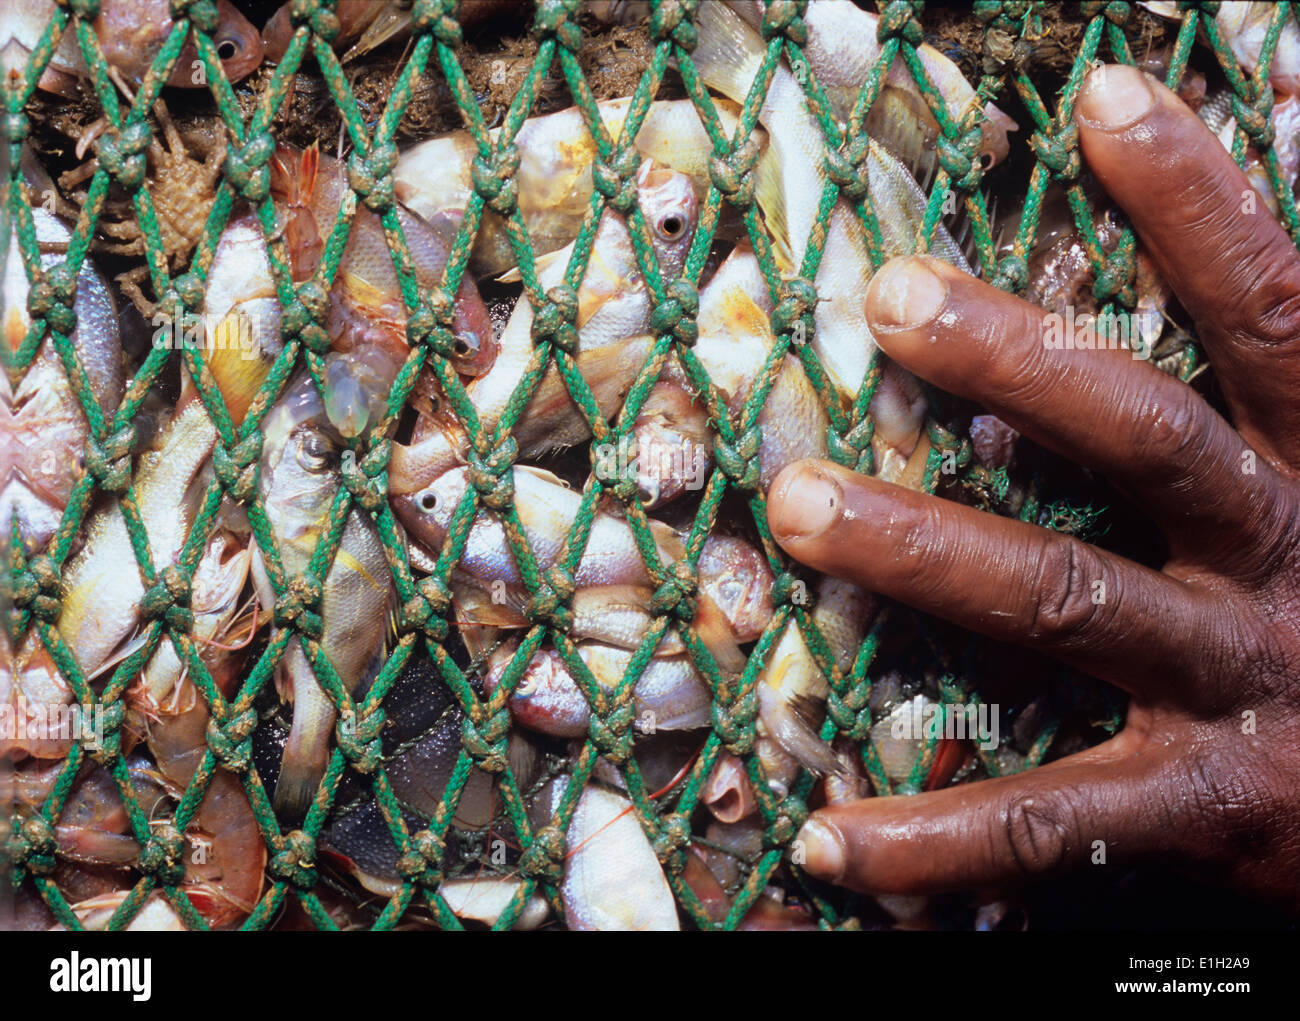 Accessoire - semi-industrial Shrimp dragueur à pétoncles juvéniles. Maputo, Mozambique. Banque D'Images